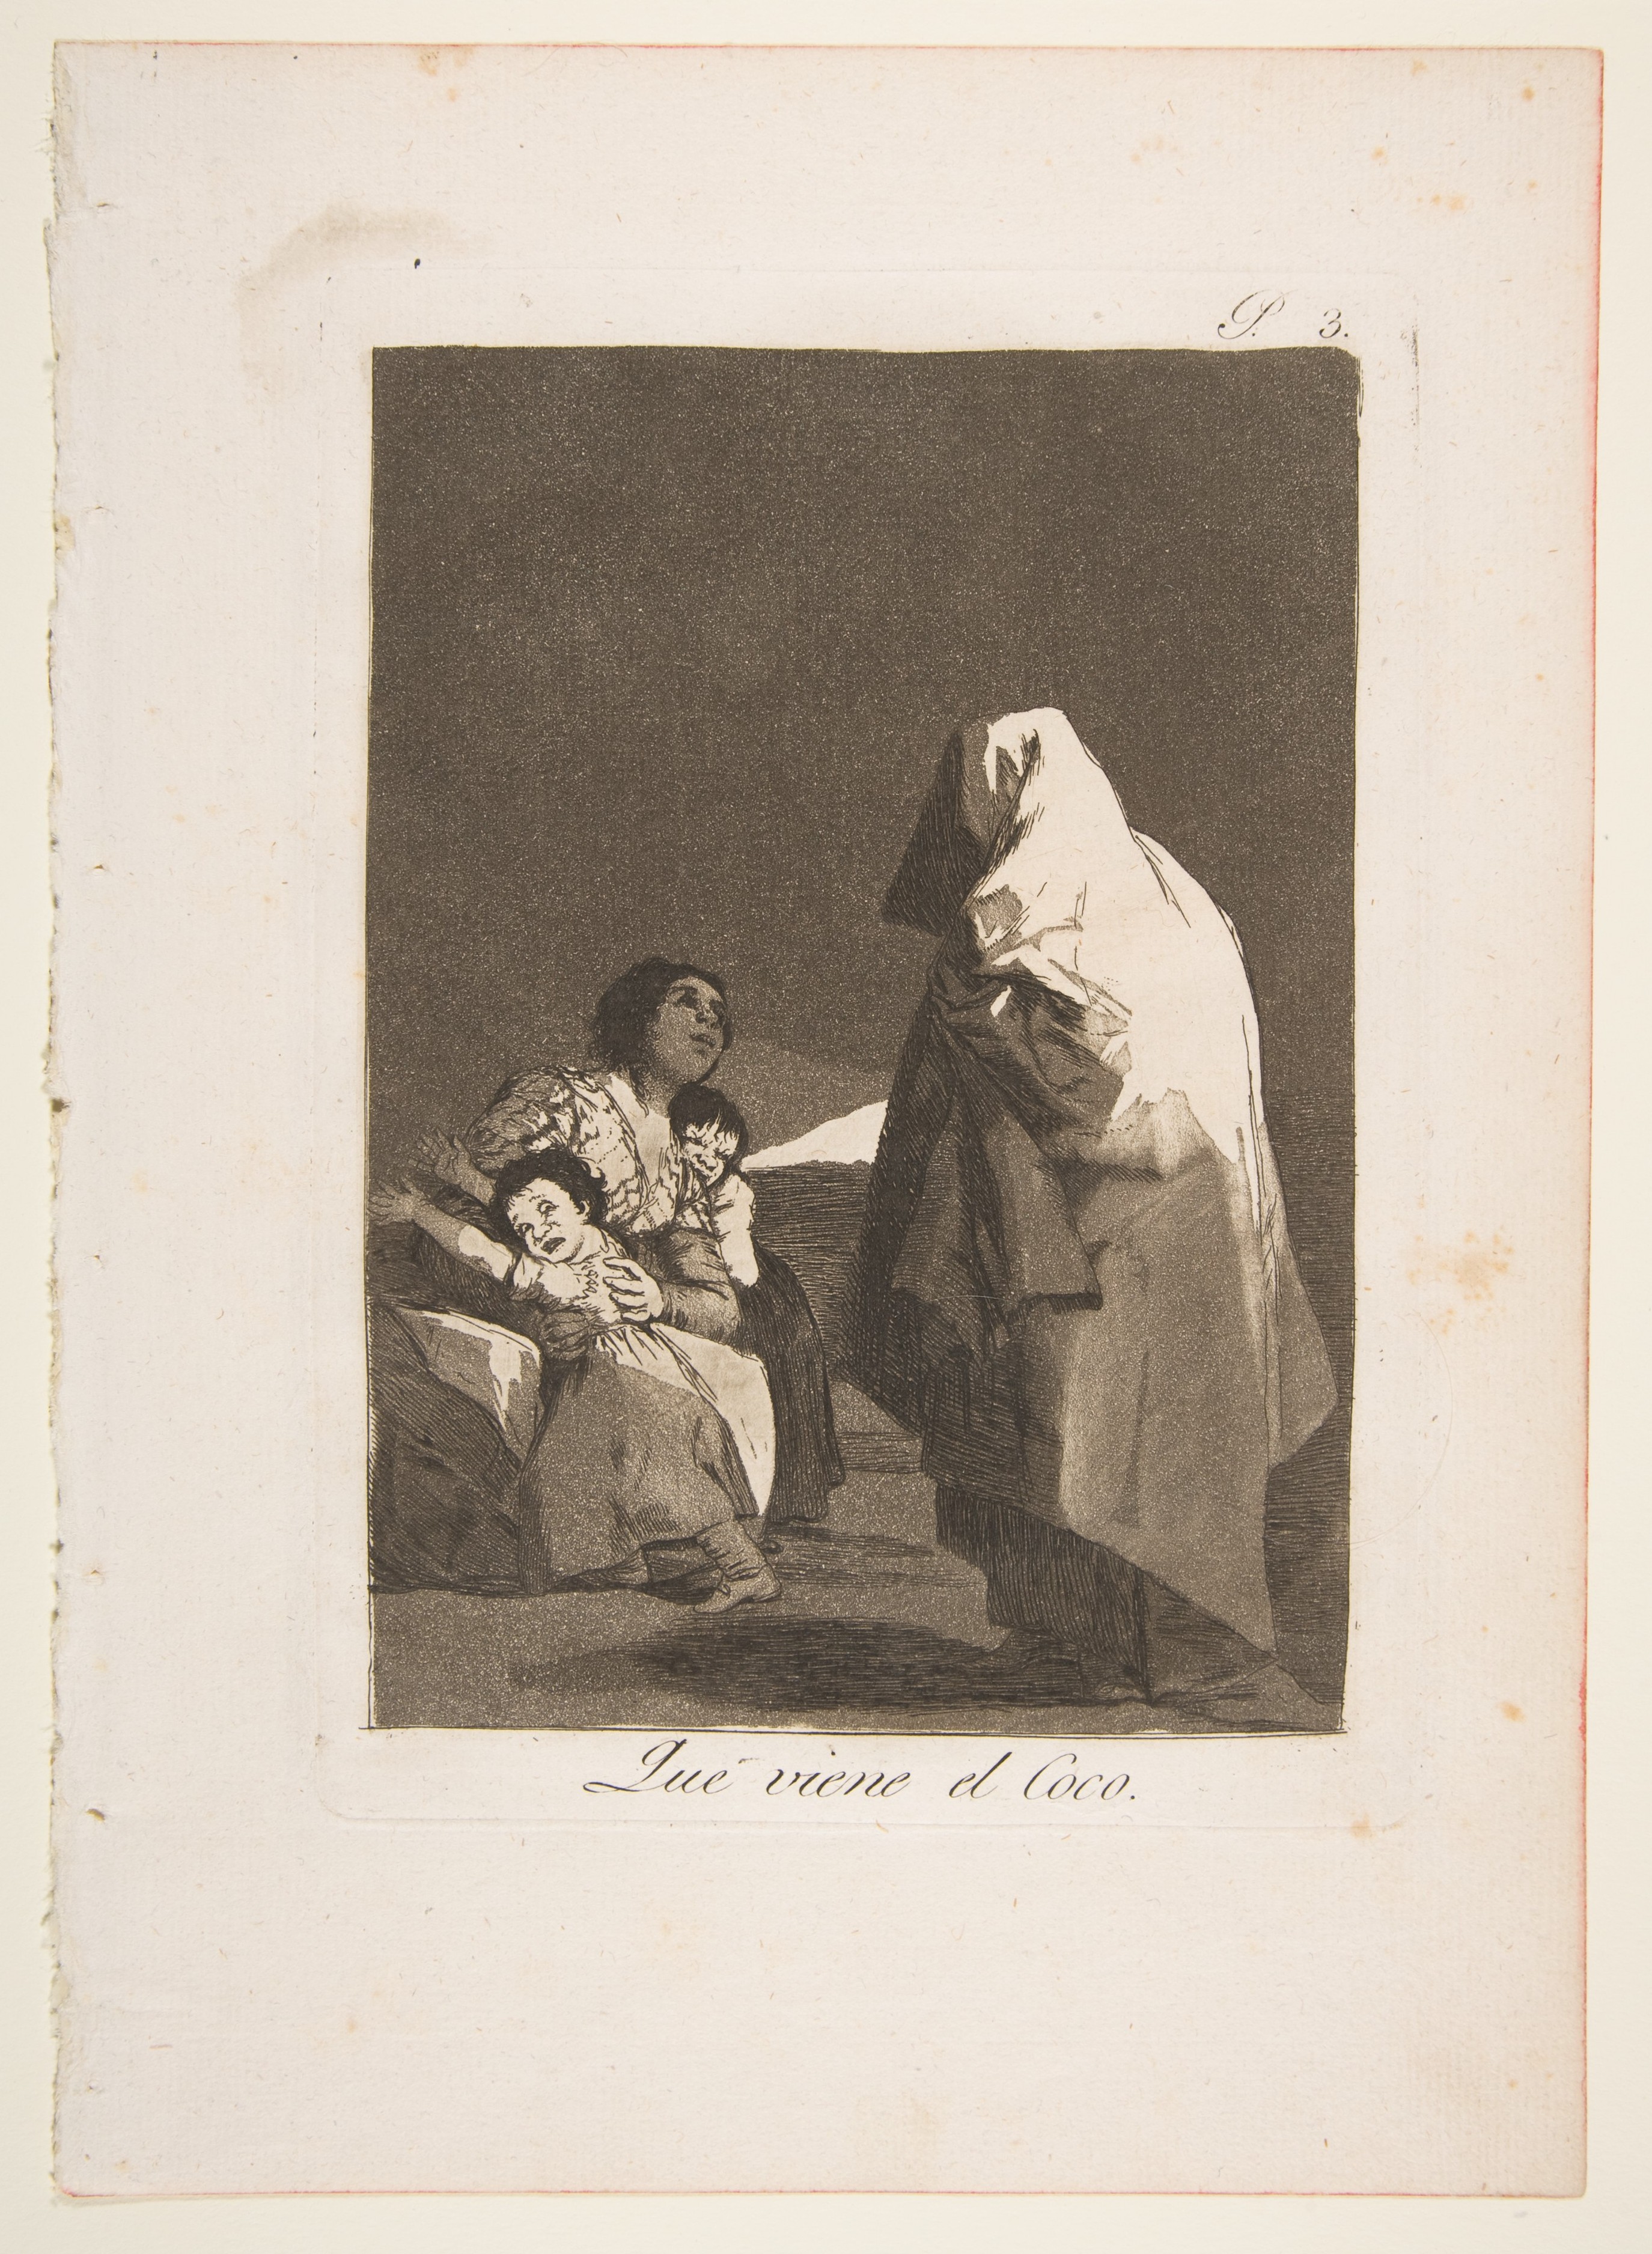 Bombilla retro a pilas – Caprichos de Goya